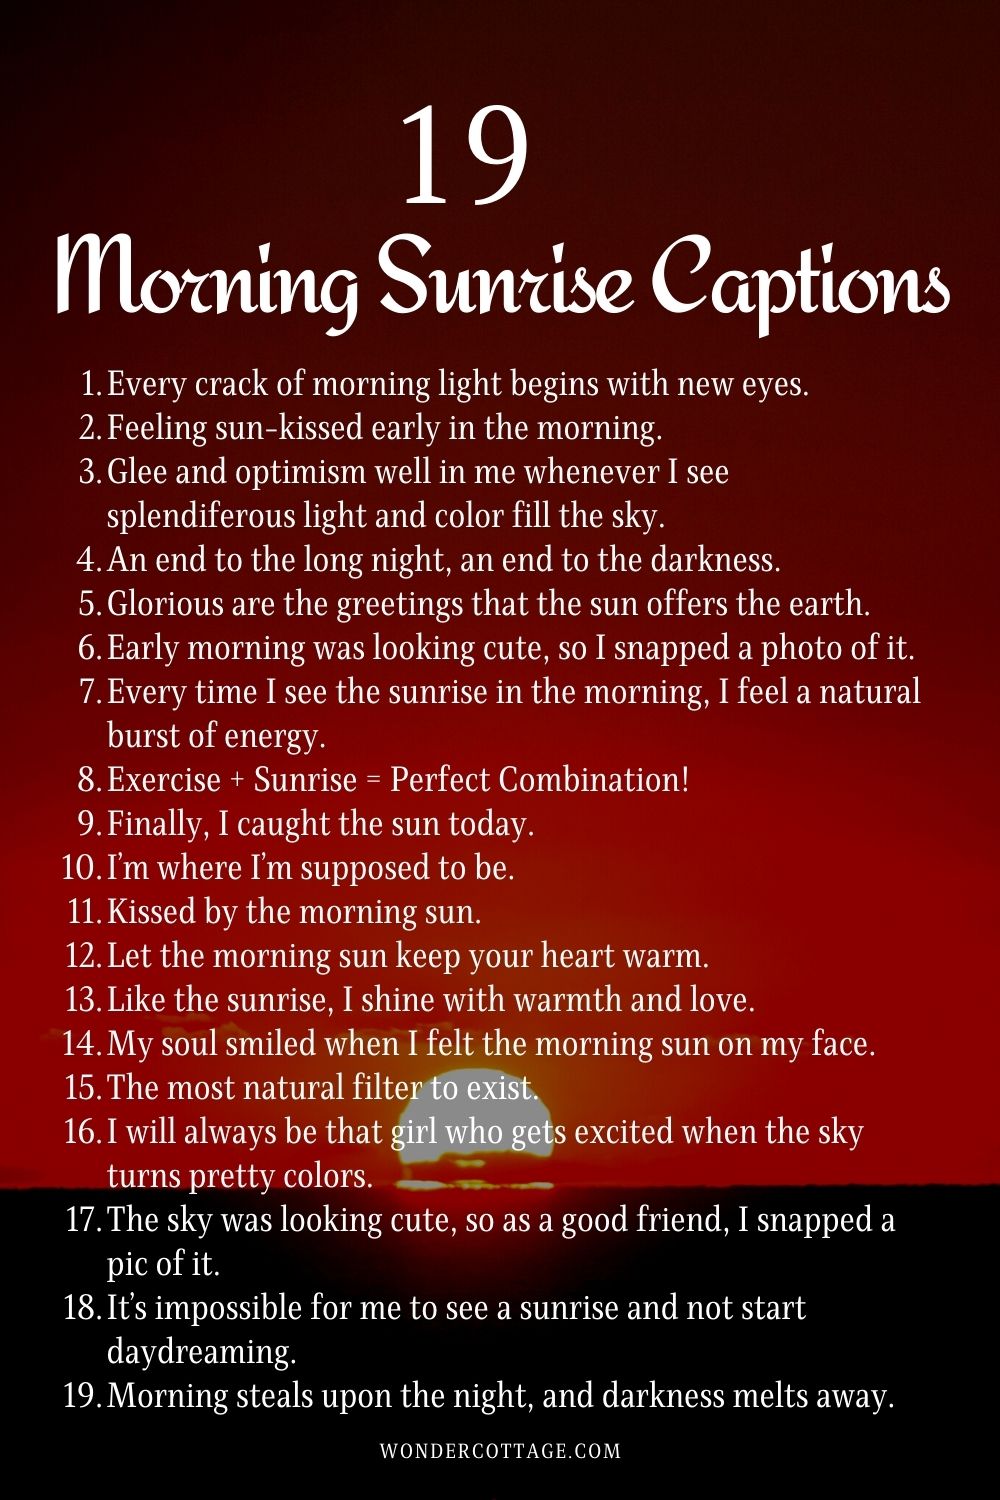 Morning sunrise captions